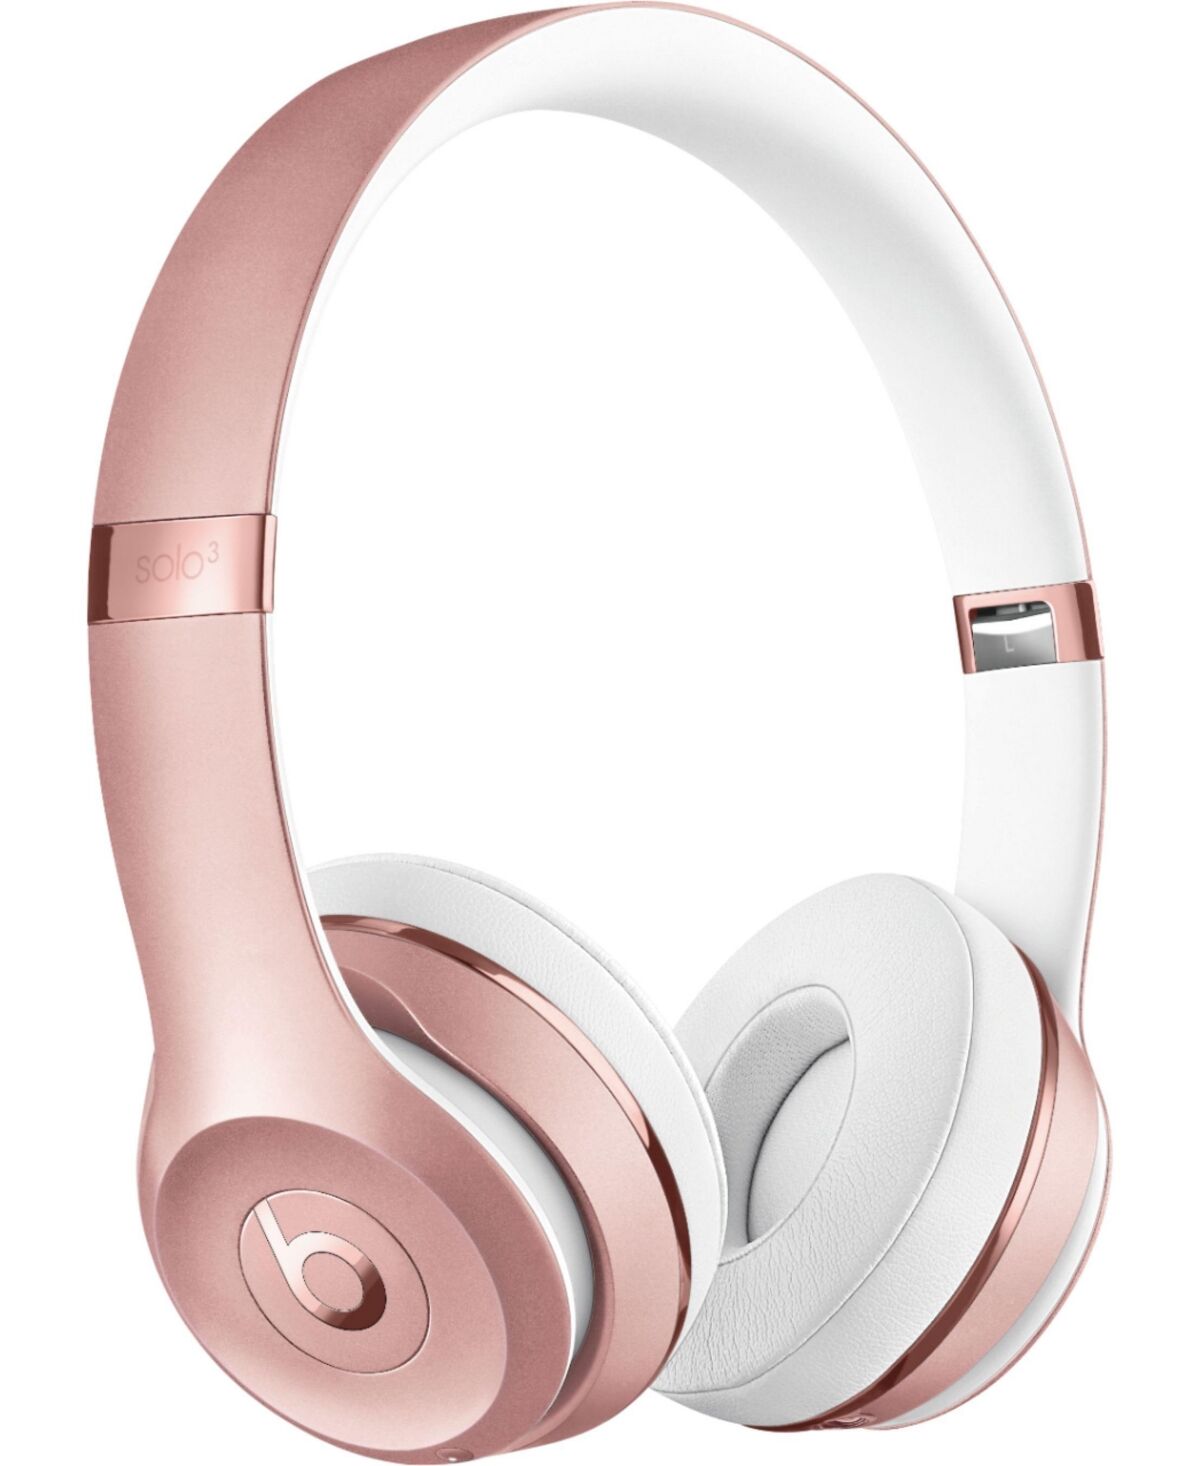 Beats Solo3 Wireless On-Ear Headphones - Rose gold